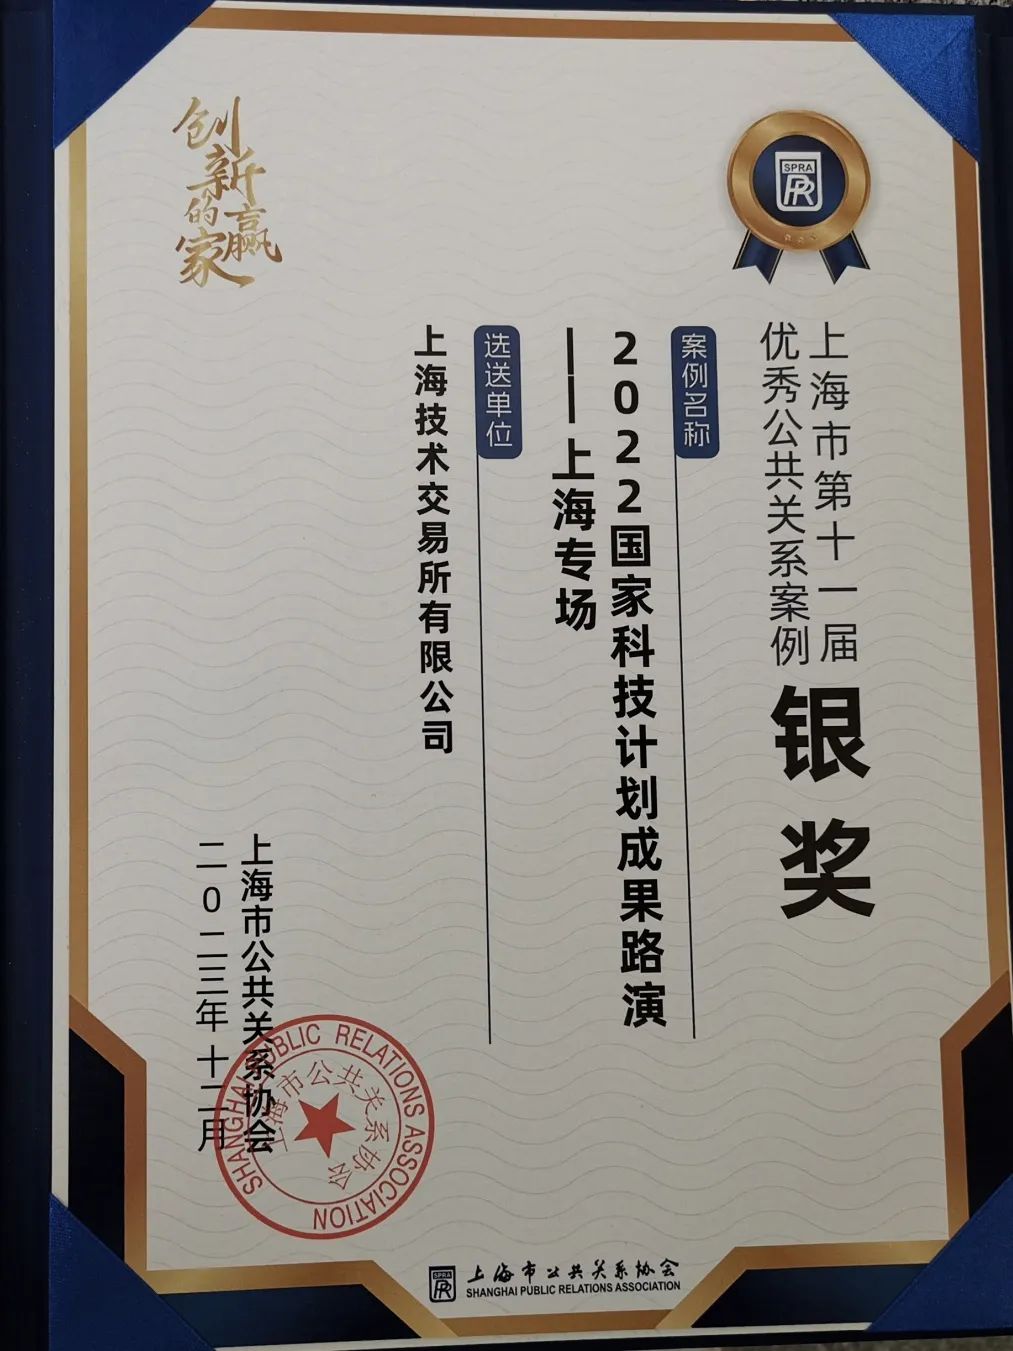 上技所荣获三项银奖，上海市第十一届优秀公共关系案例颁奖典礼举行